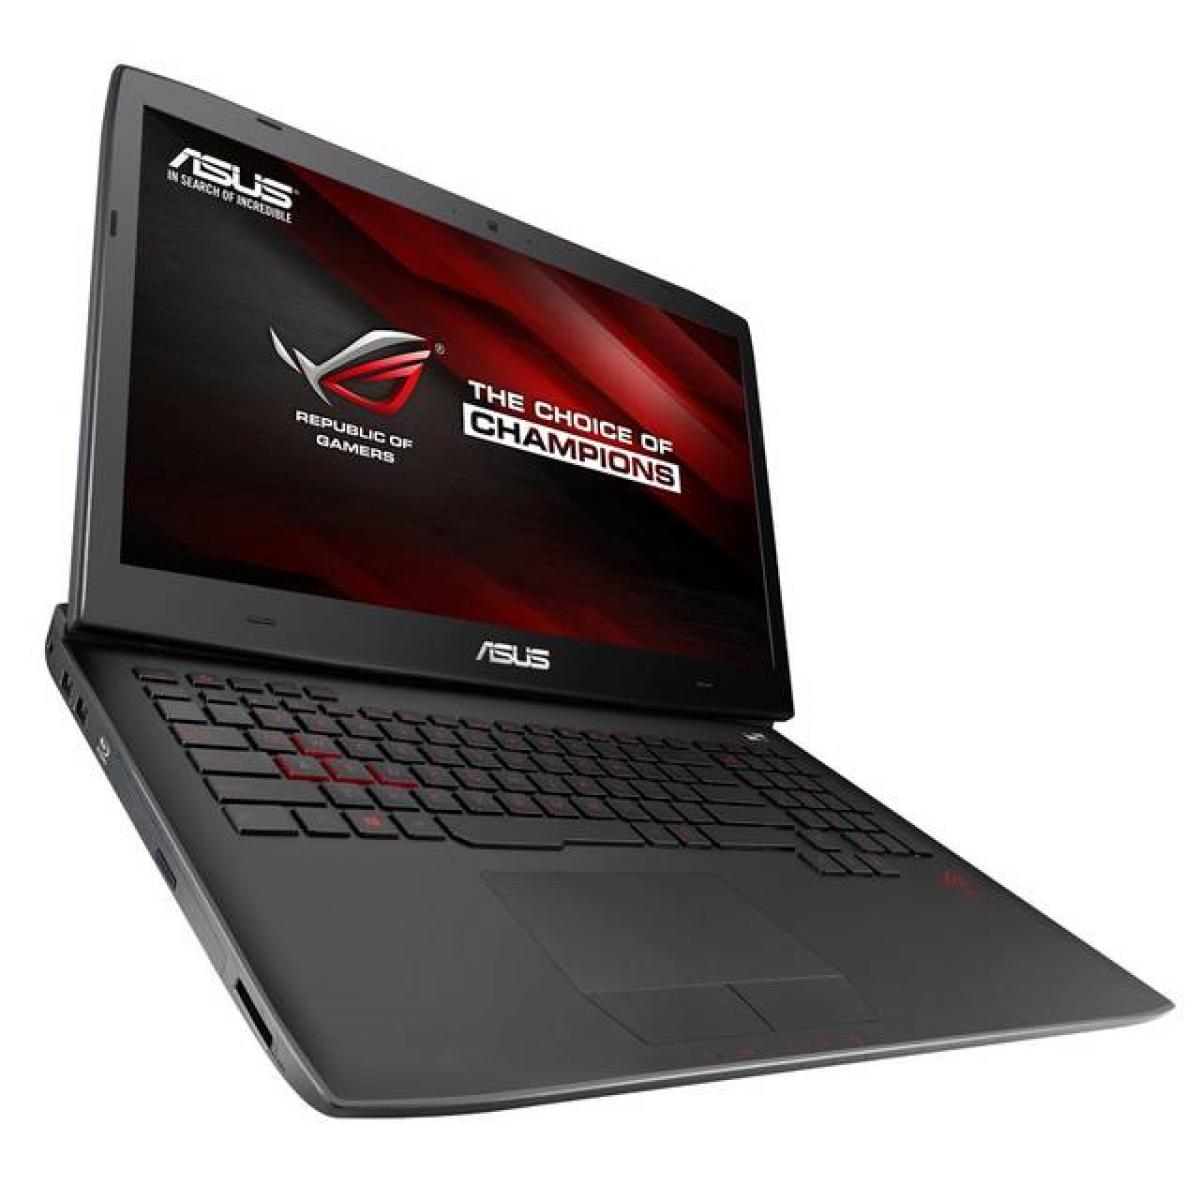  Asus ROG G751  4Gen Intel Core i7 Gaming Laptop G751JT 